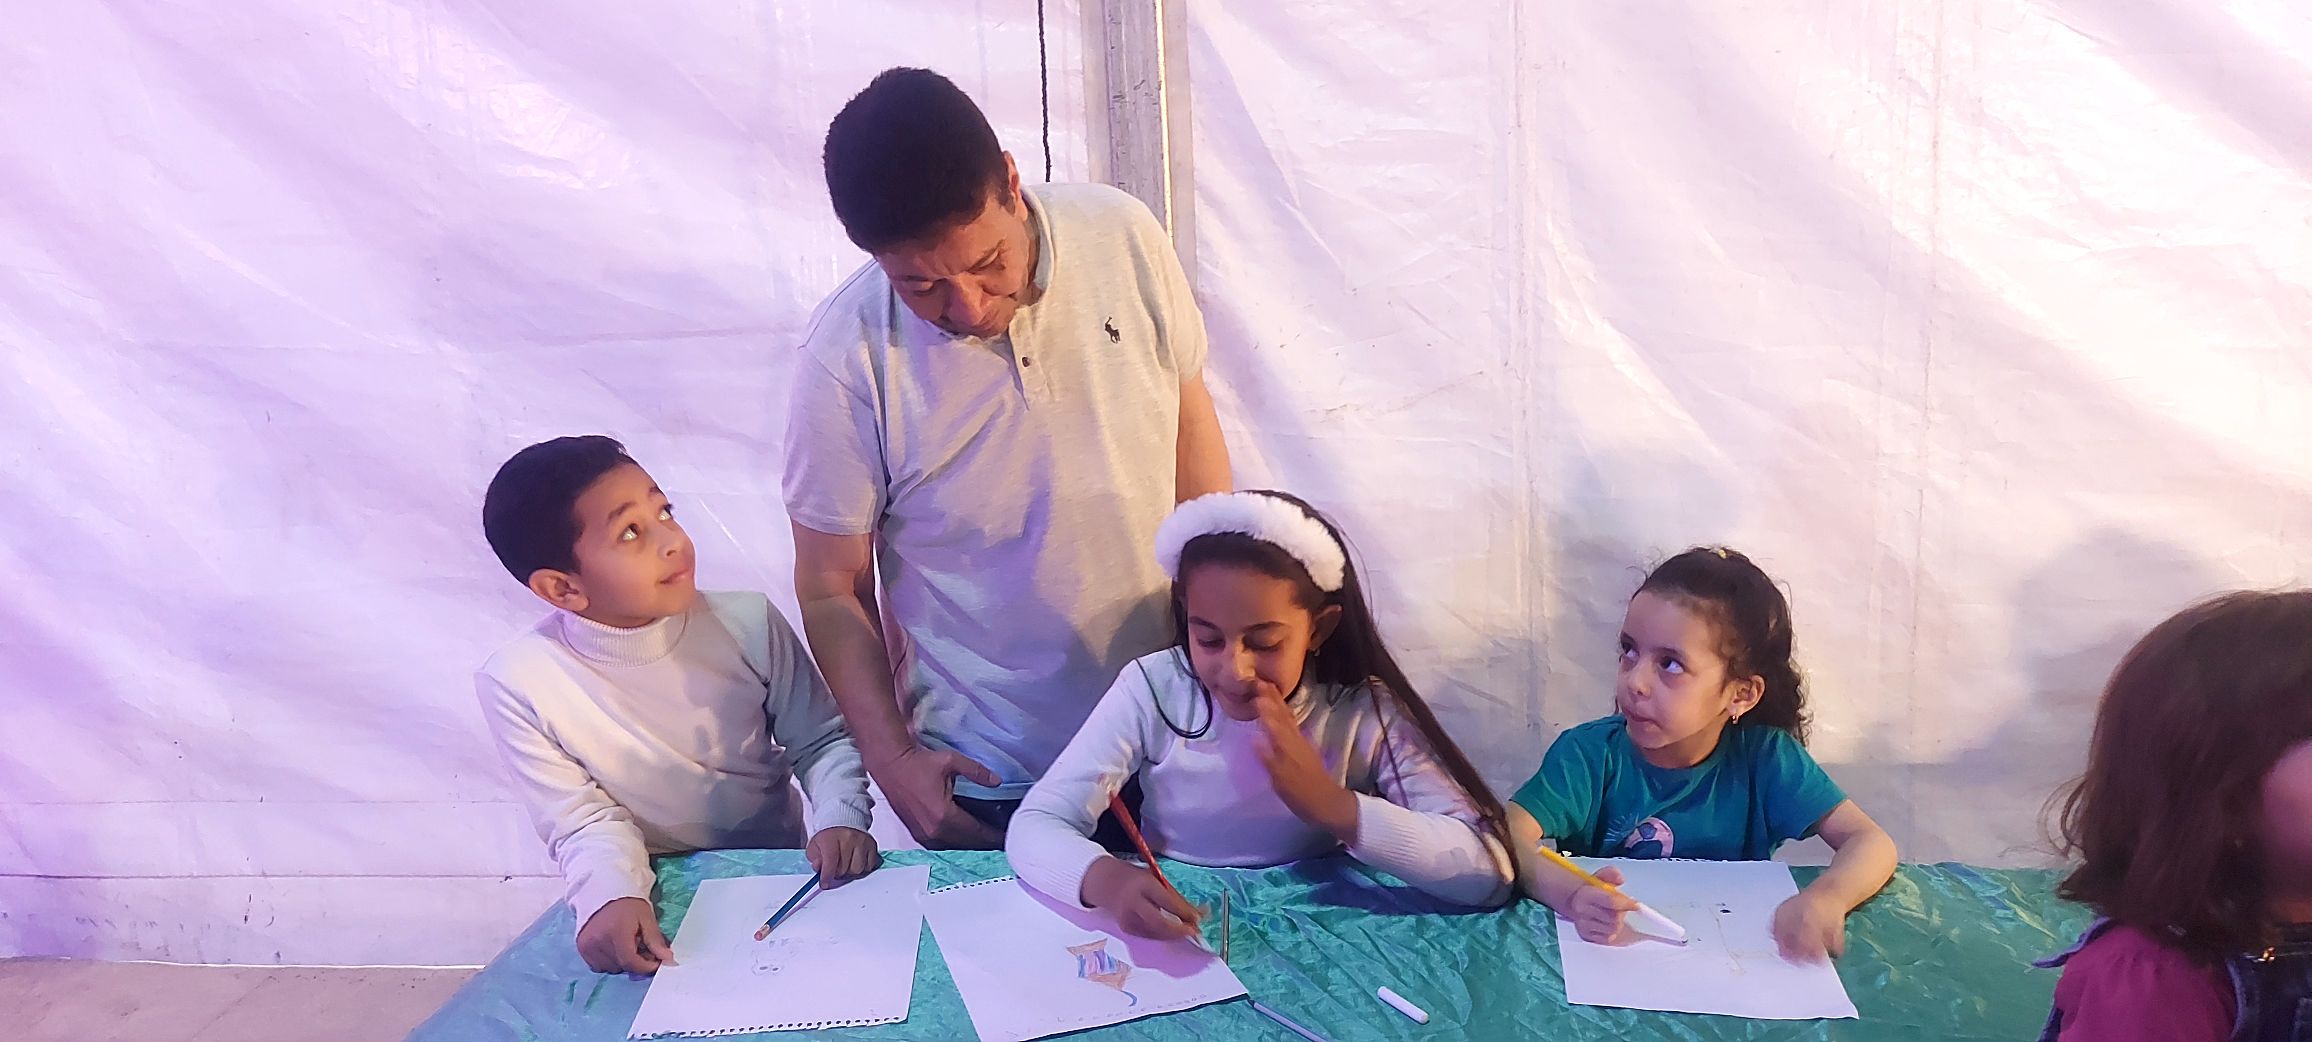 ورش تعليم الأطفال رسم فانوس رمضان بالأقصر